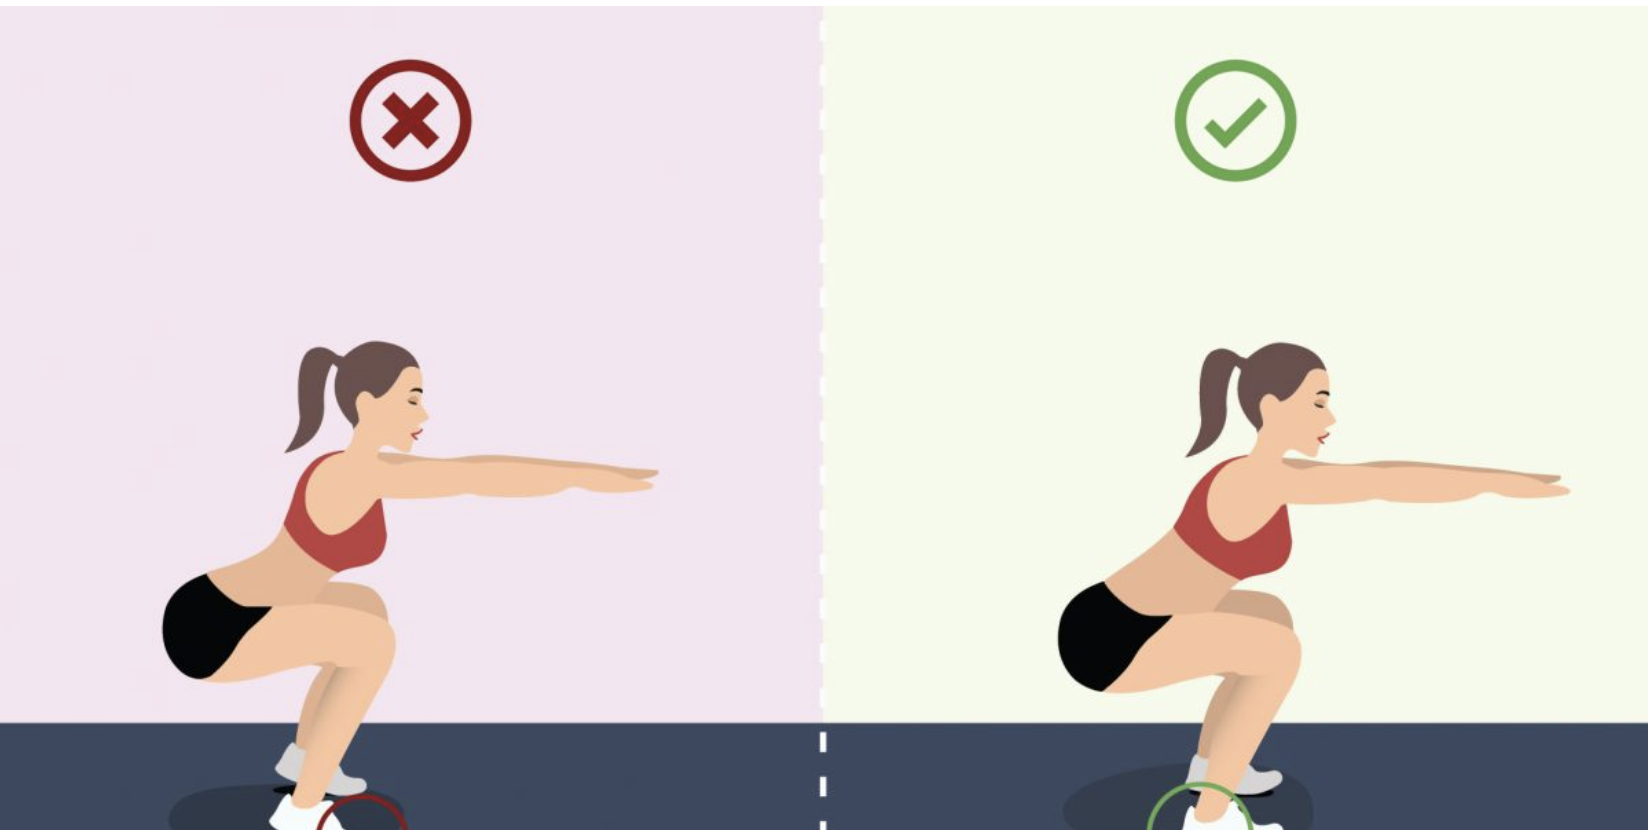 Ngọc Trinh đăng clip hướng dẫn tập thể dục, ai dè bị netizen chỉ ra lỗi sai cơ bản, có nguy cơ tổn thương lưng nghiêm trọng - Ảnh 3.